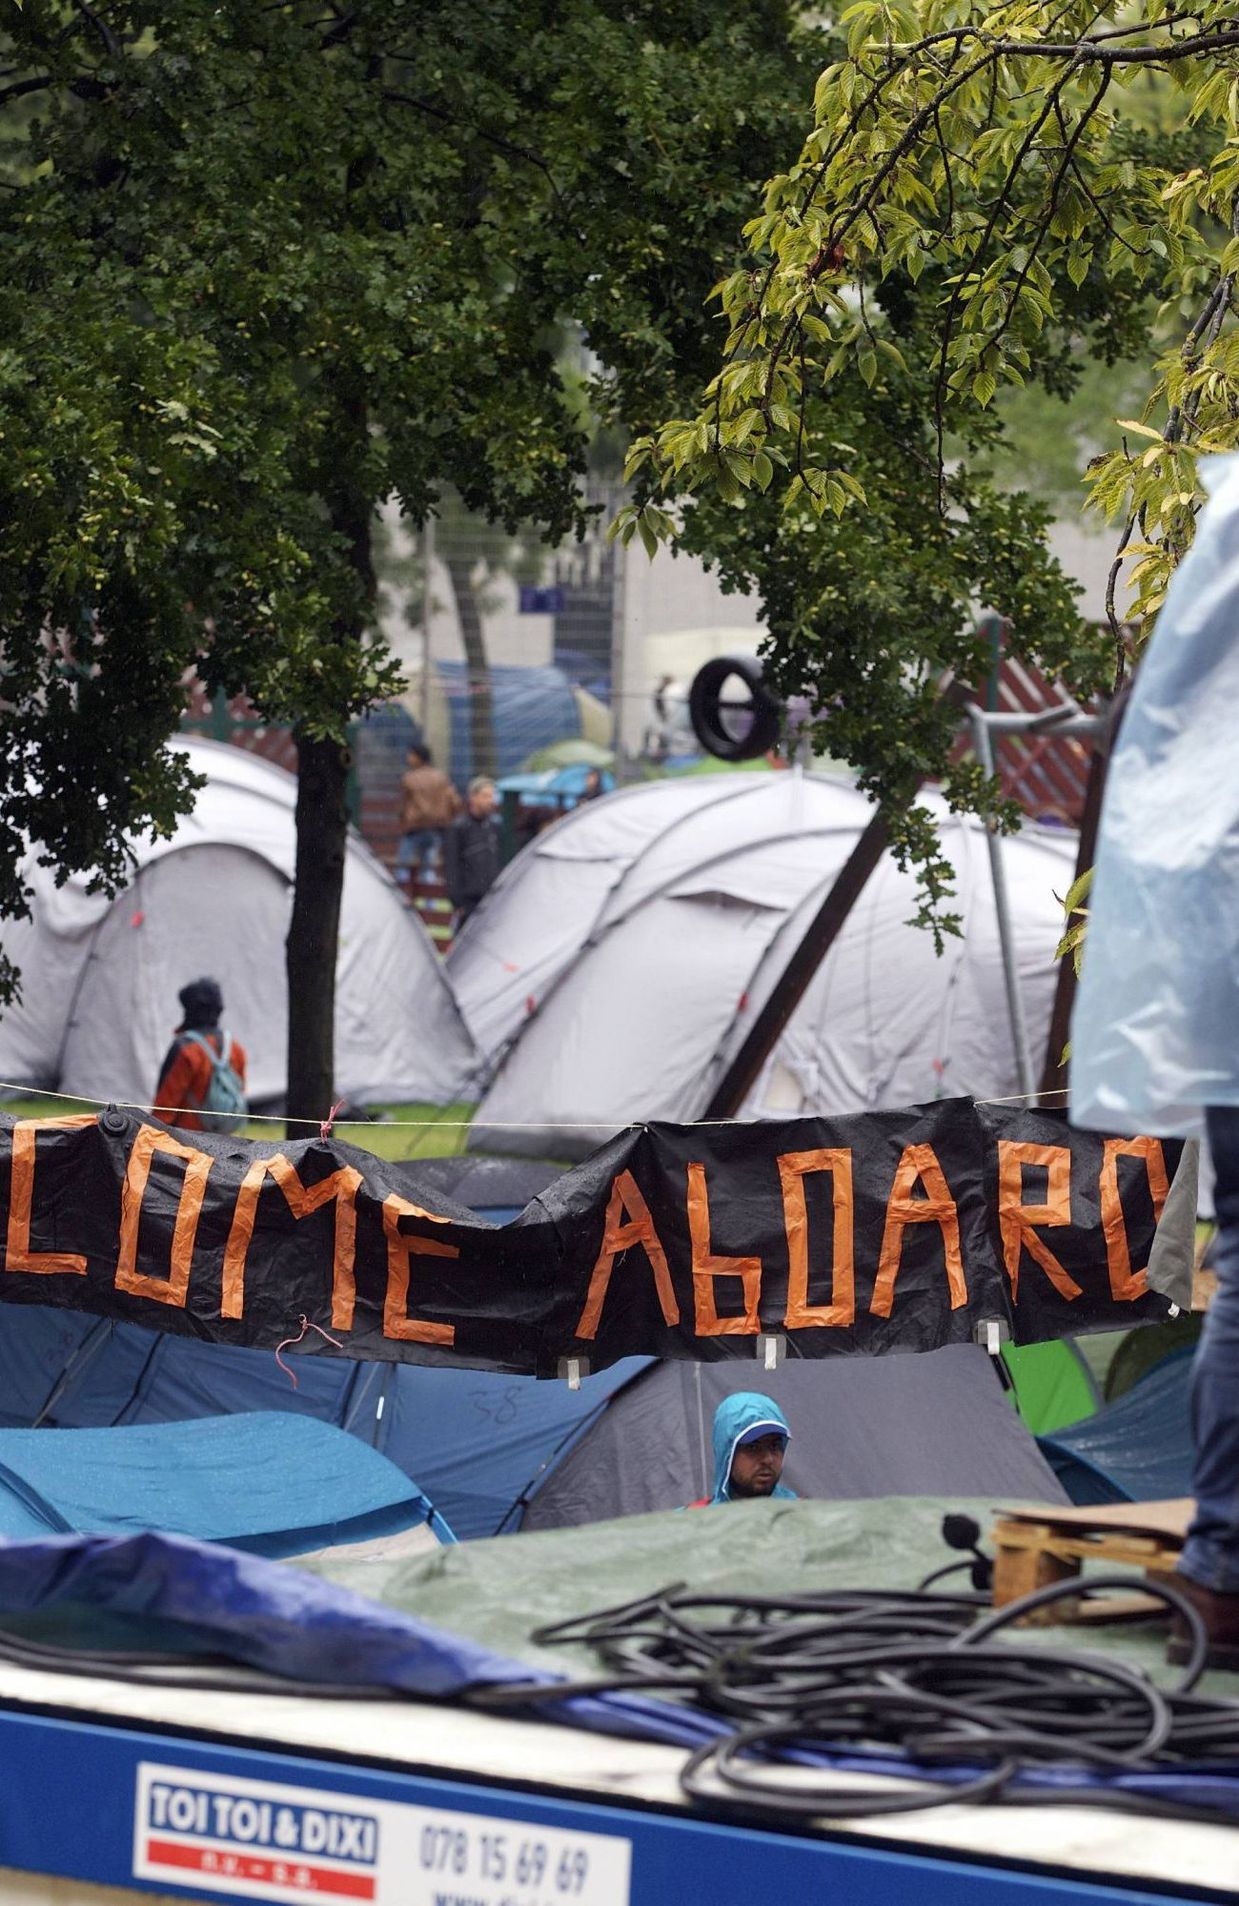 Demandes d'asile: une évacuation progressive et organisée du parc Maximilien se prépare